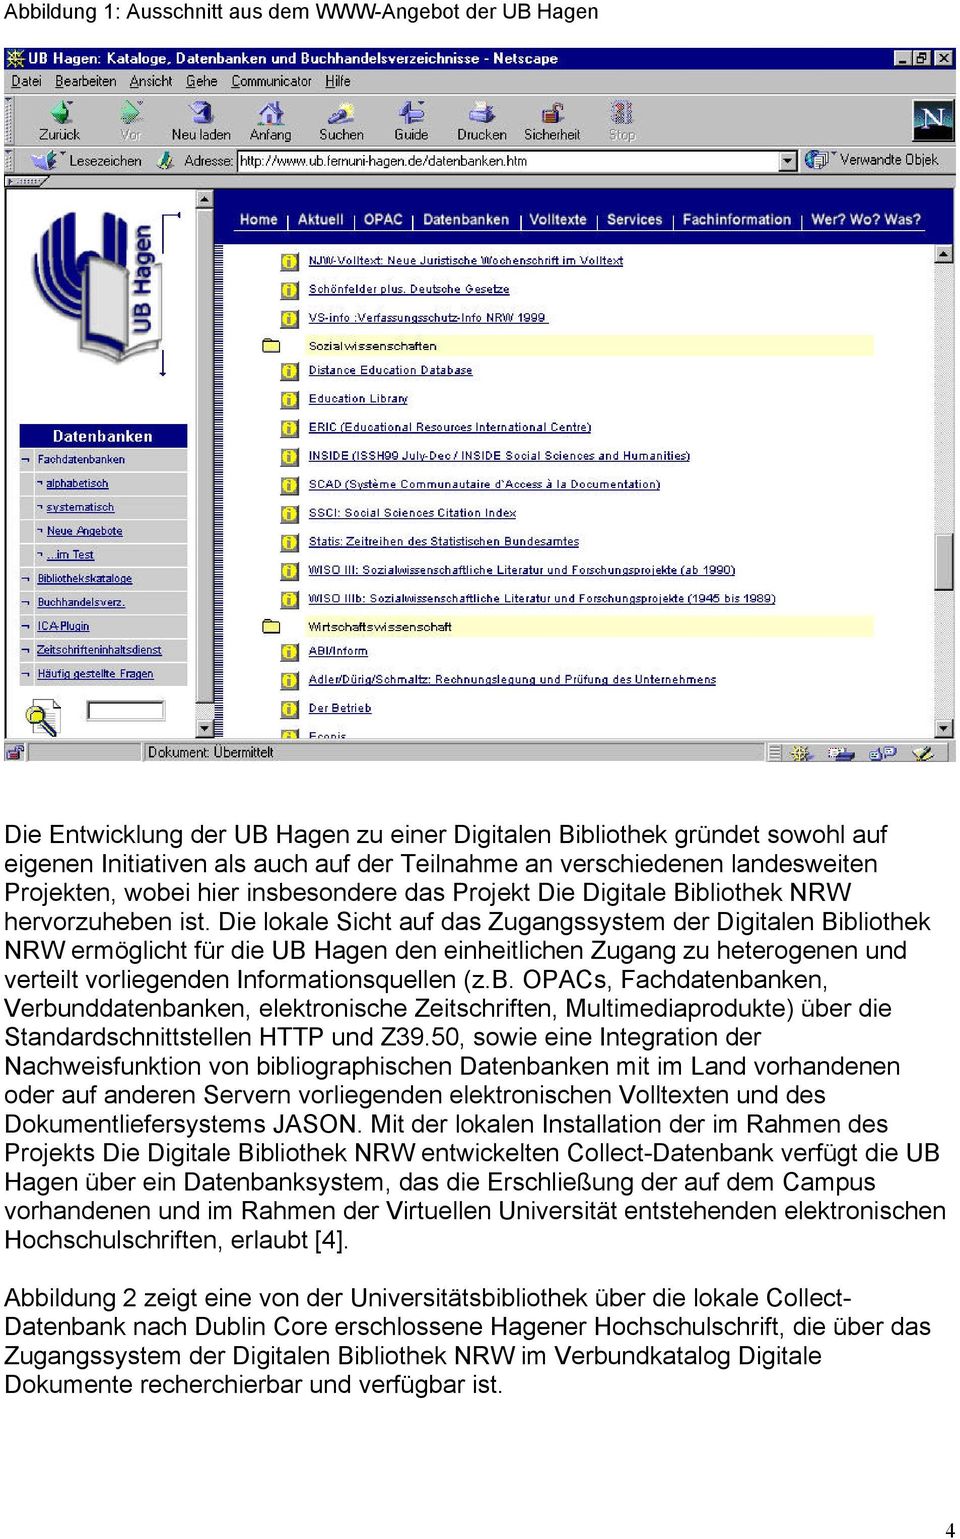 Die lokale Sicht auf das Zugangssystem der Digitalen Bibliothek NRW ermöglicht für die UB Hagen den einheitlichen Zugang zu heterogenen und verteilt vorliegenden Informationsquellen (z.b. OPACs, Fachdatenbanken, Verbunddatenbanken, elektronische Zeitschriften, Multimediaprodukte) über die Standardschnittstellen HTTP und Z39.